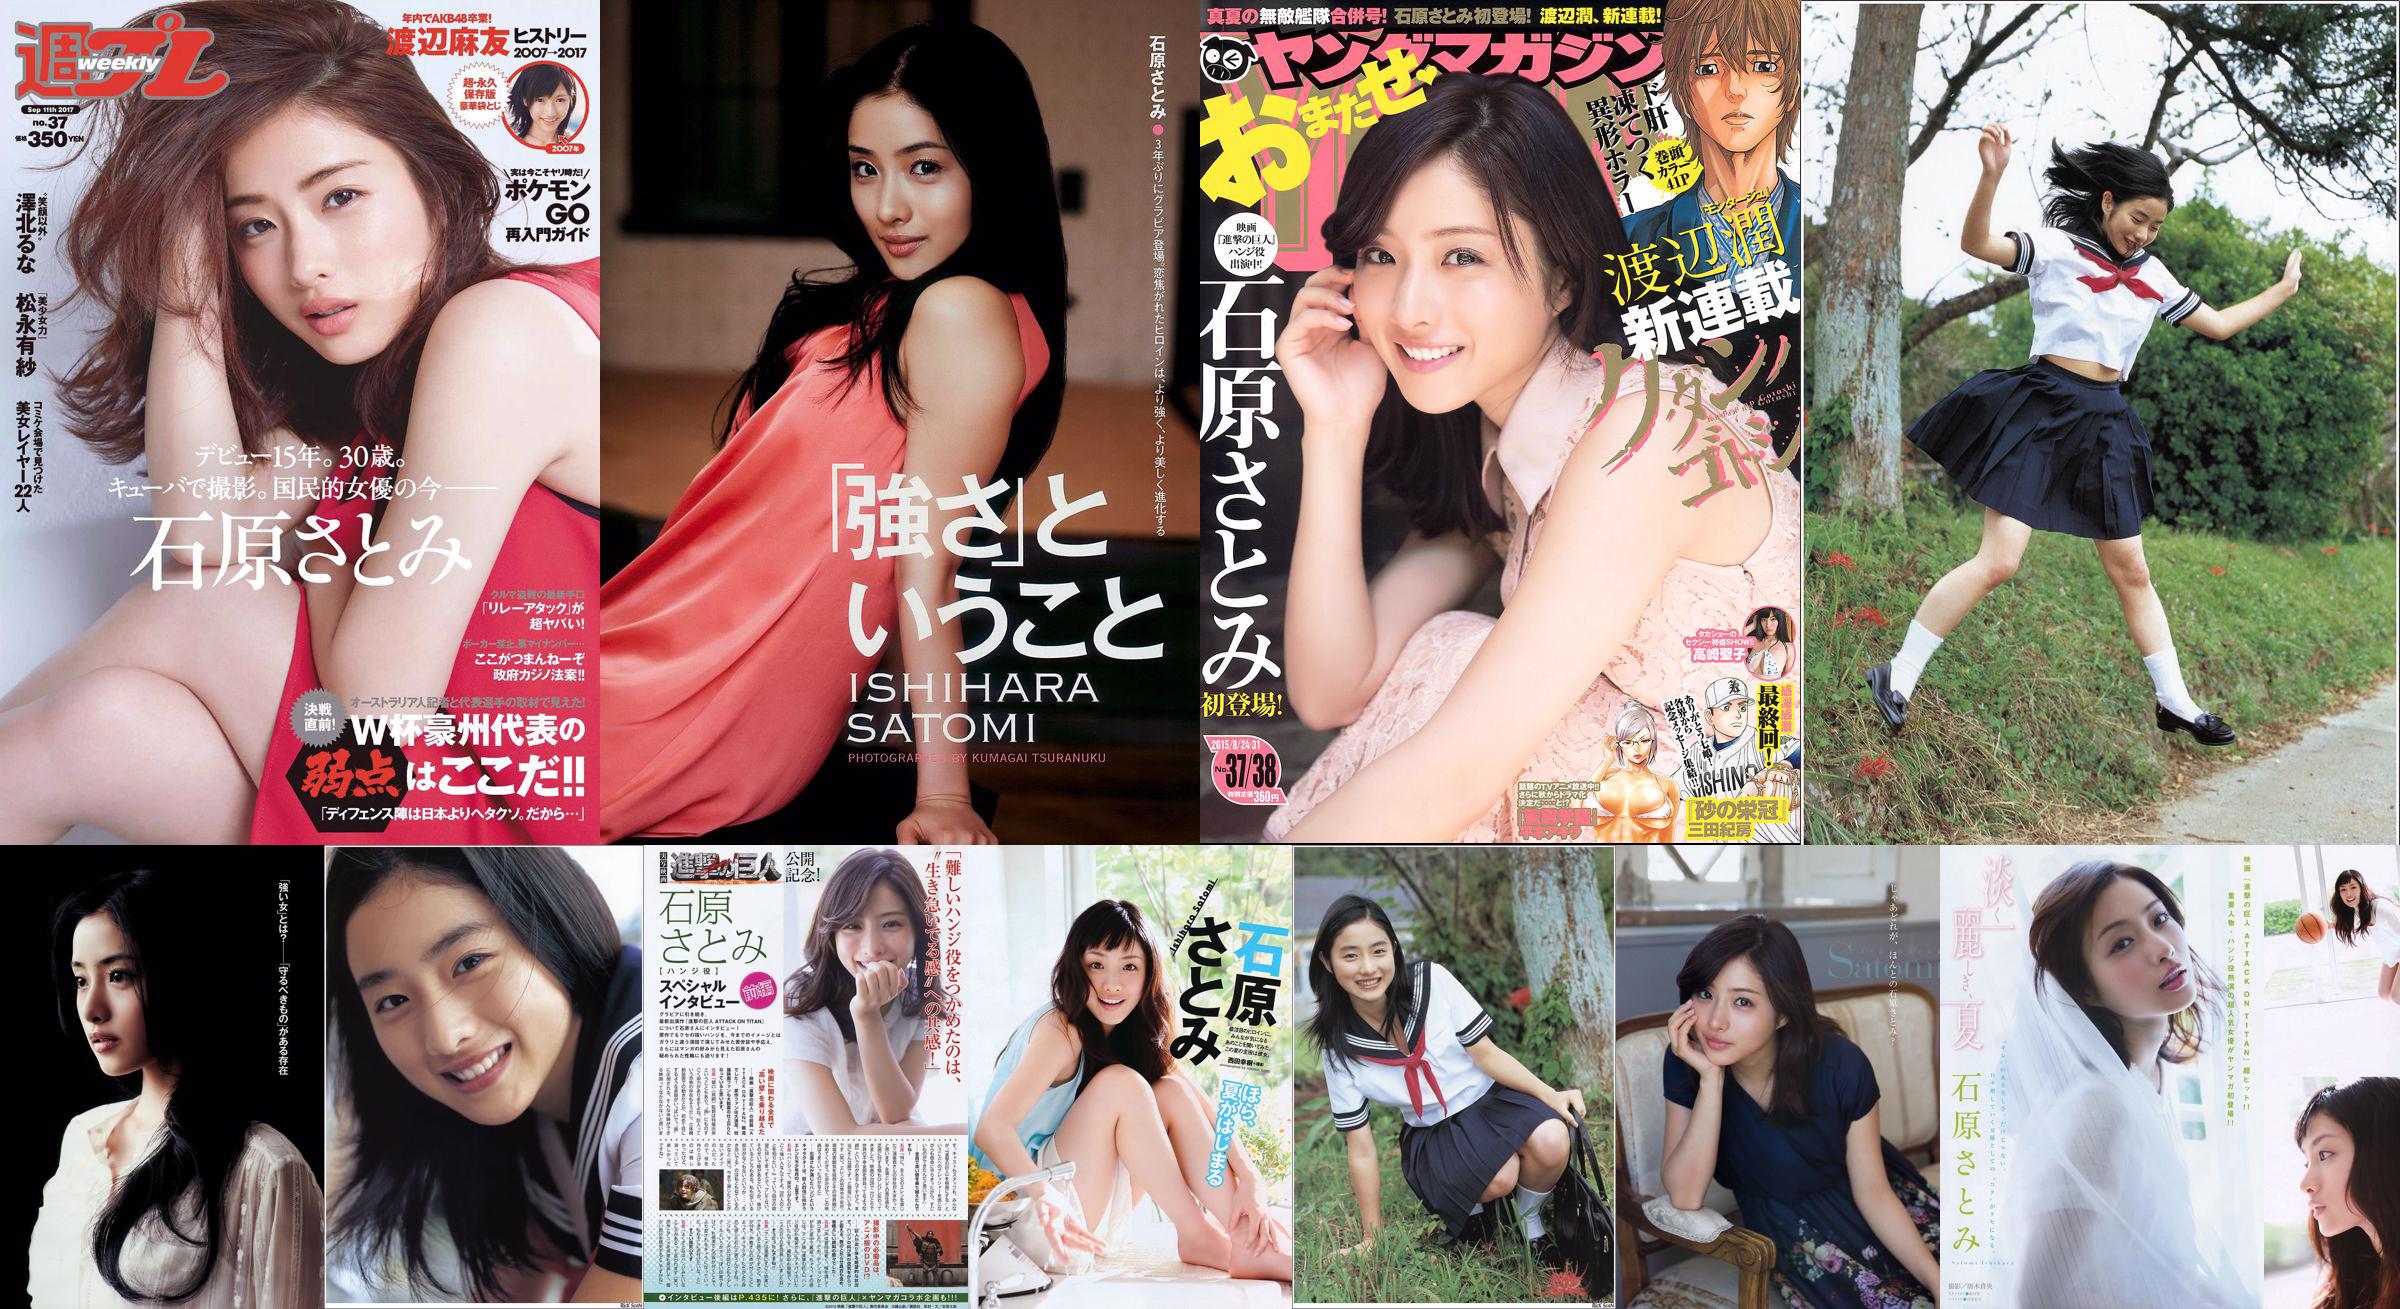 [Young Magazine] Ishihara さとみ Takasaki Seiko 2015 No.37-38 Photo Magazine No.7efa75 Seite 3